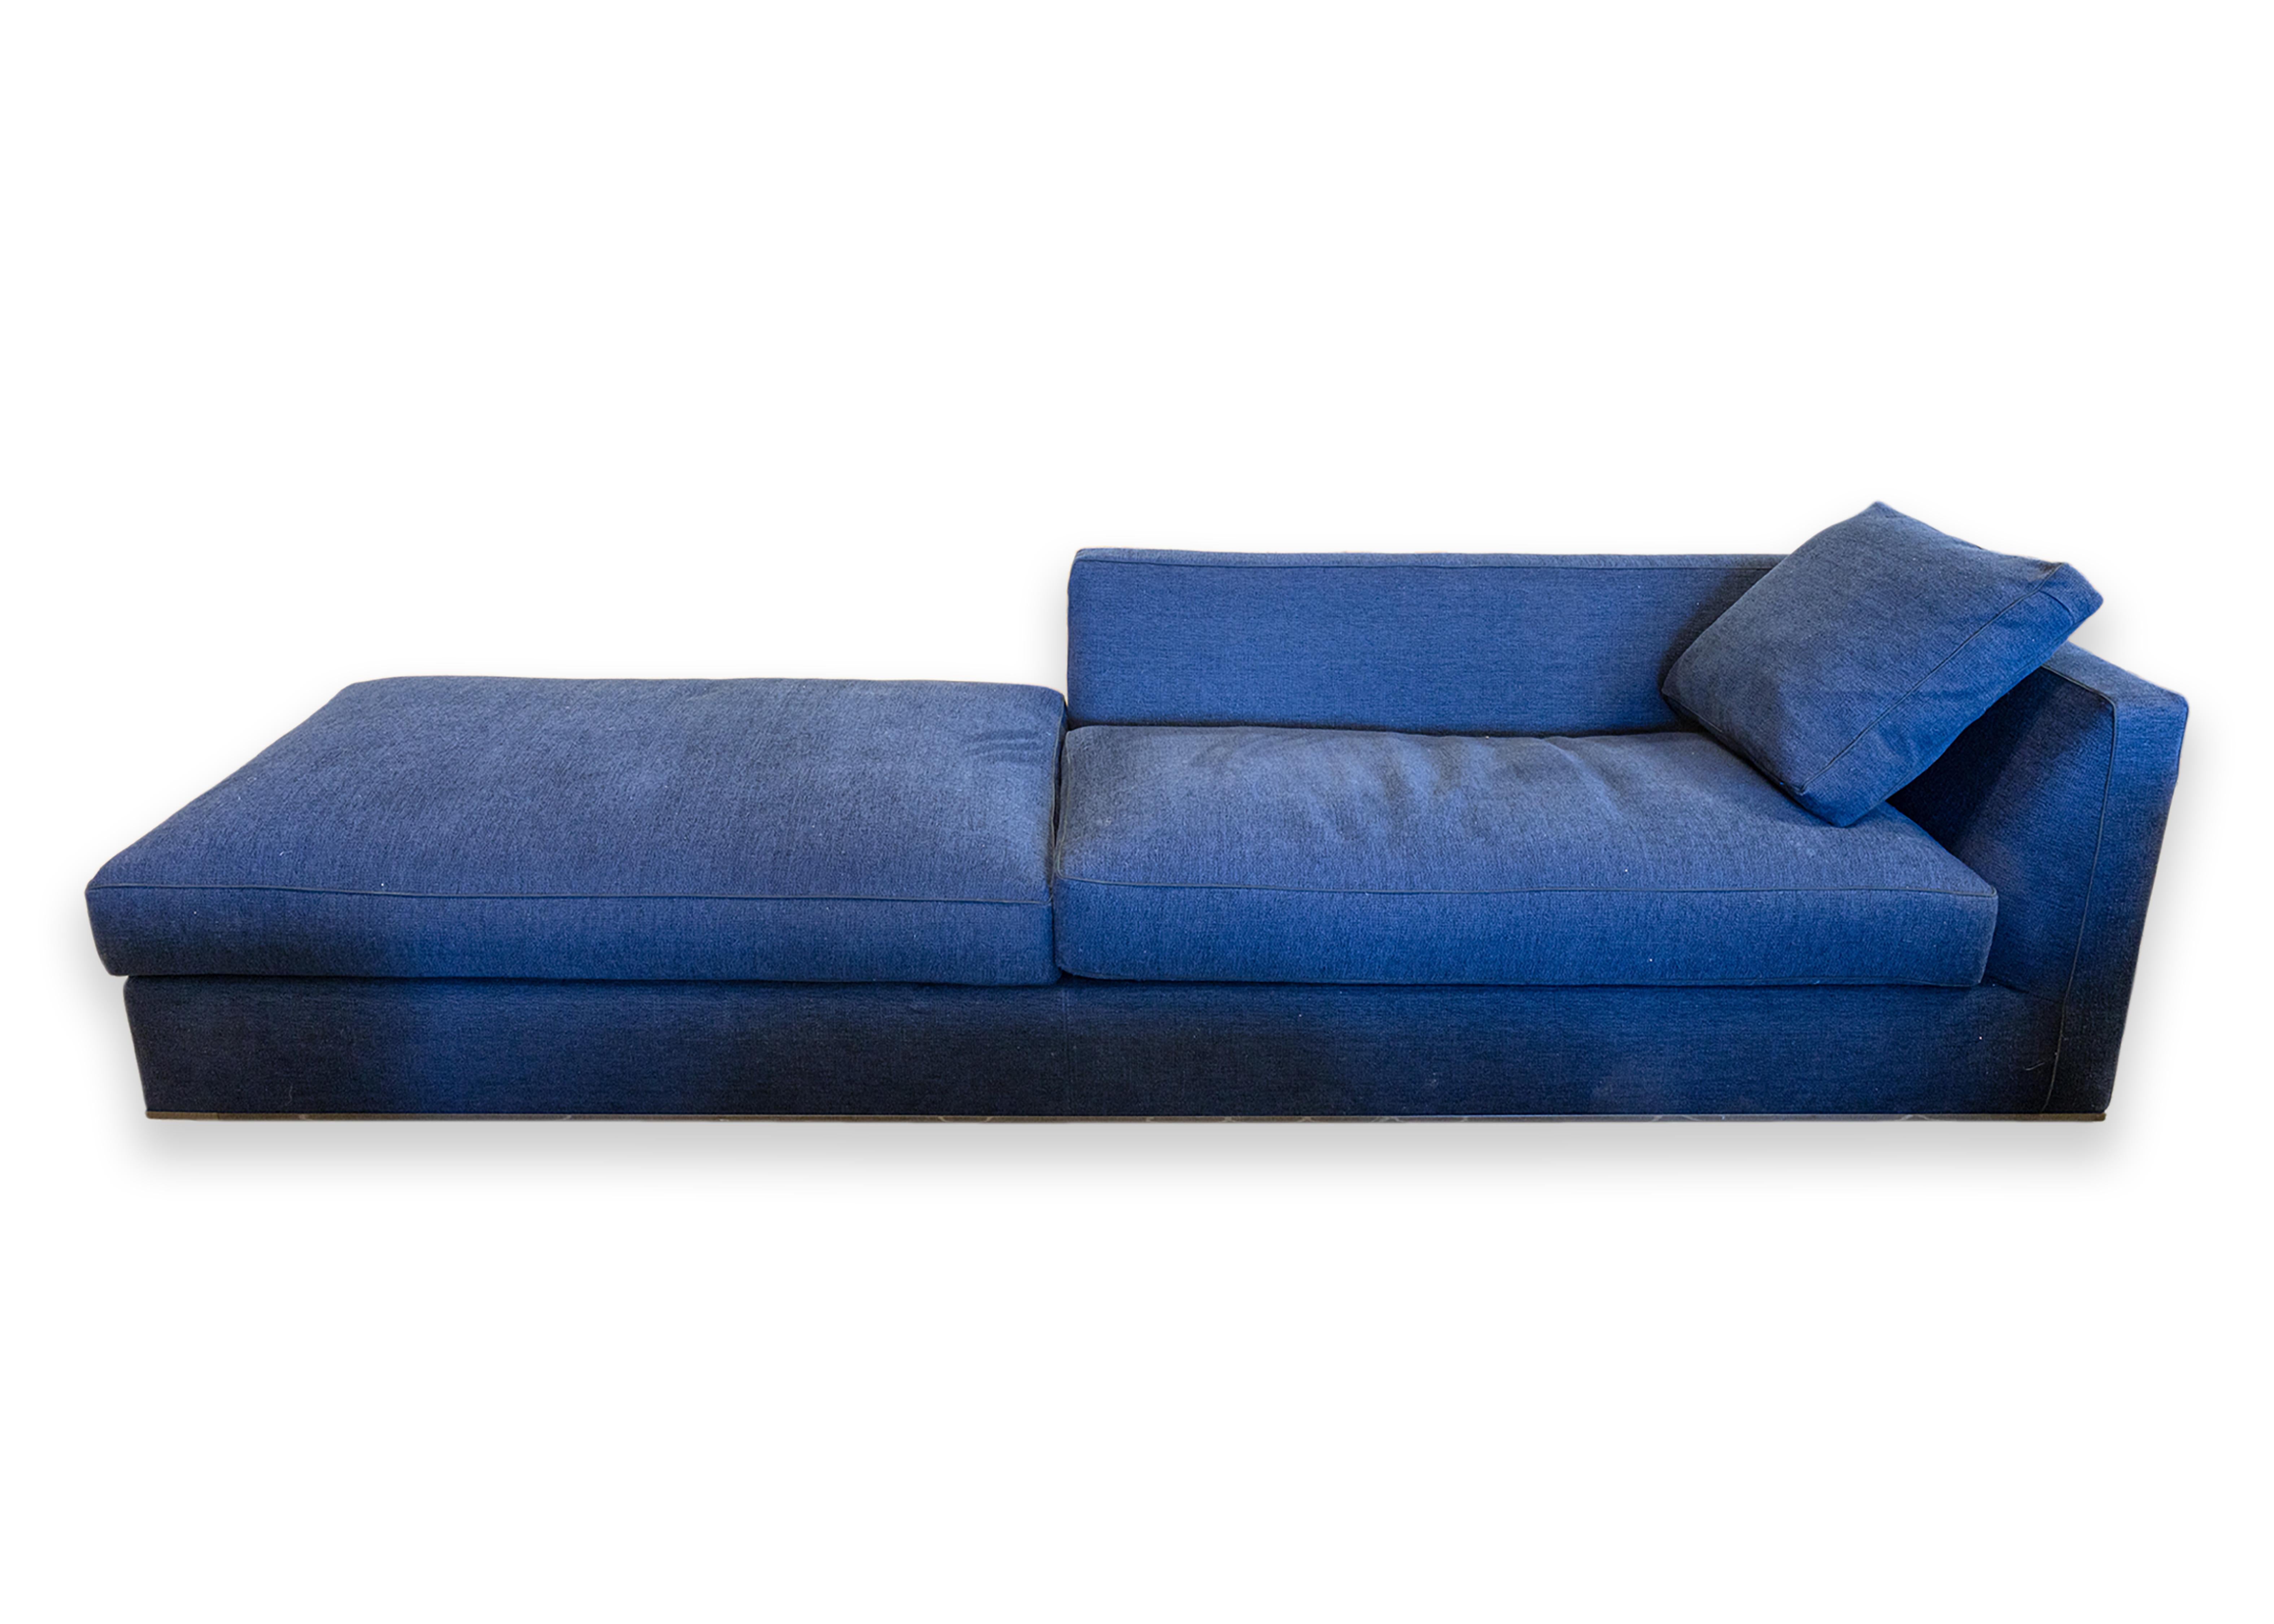 B & B Italia Antonio Citterio Richard Chaise Lounge Sofa in Blue Grade S Fabric For Sale 3